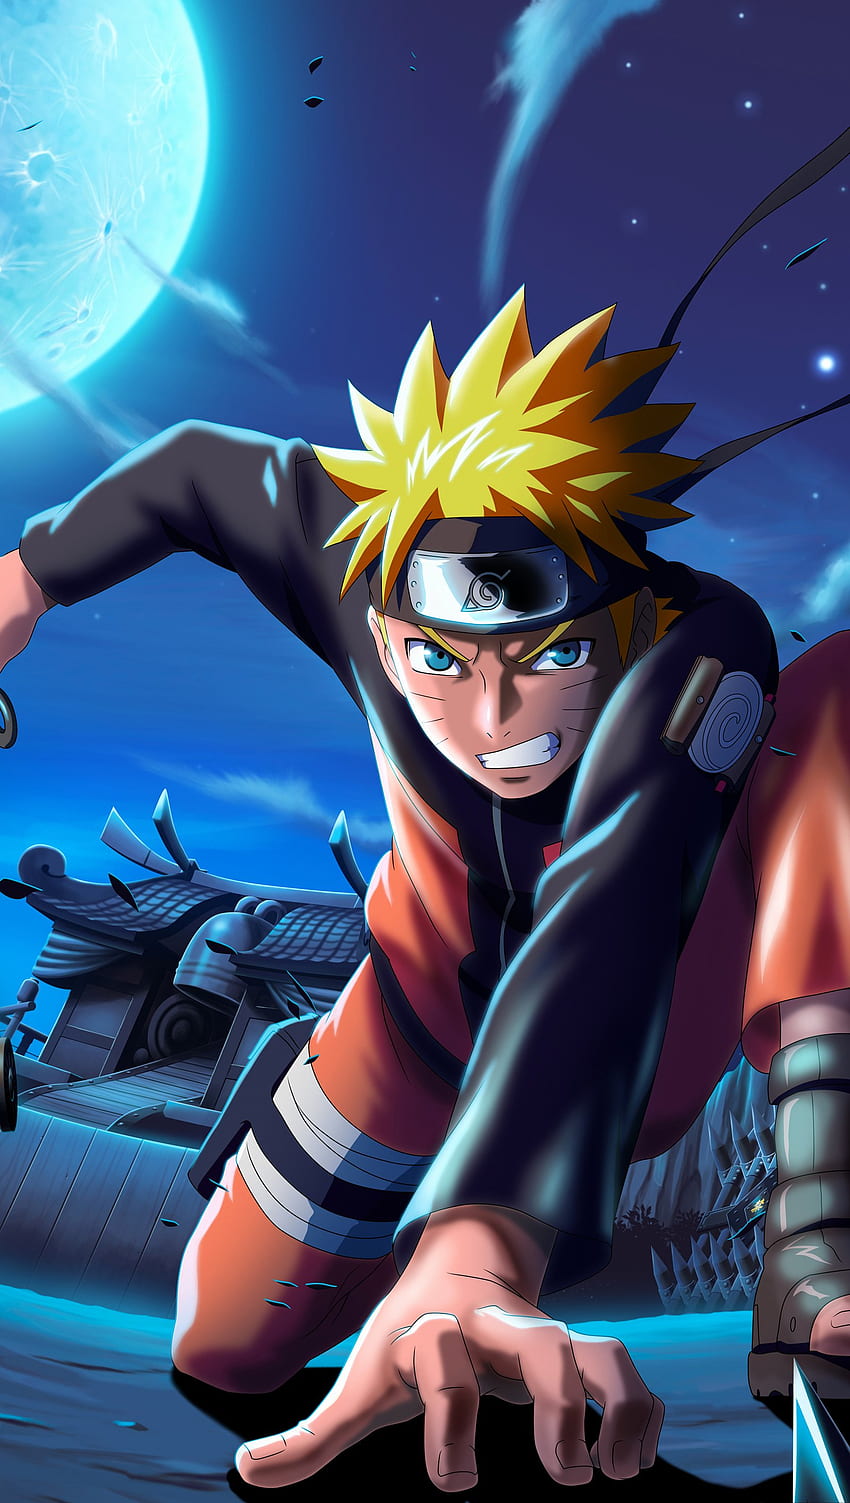 Naruto (anime character): Với sức hút của một anh hùng trẻ tuổi, Naruto sẽ đưa bạn vào một cuộc hành trình phiêu lưu đầy mạo hiểm trong thế giới Naruto. Cùng chàng ninja sở hữu chakra ấn tượng đánh bại các tên ác nhân, học được những bài học đáng giá và cảm nhận sức mạnh của tình bạn, tình đồng đội. Chắc chắn bạn sẽ không thể bỏ qua Naruto. 